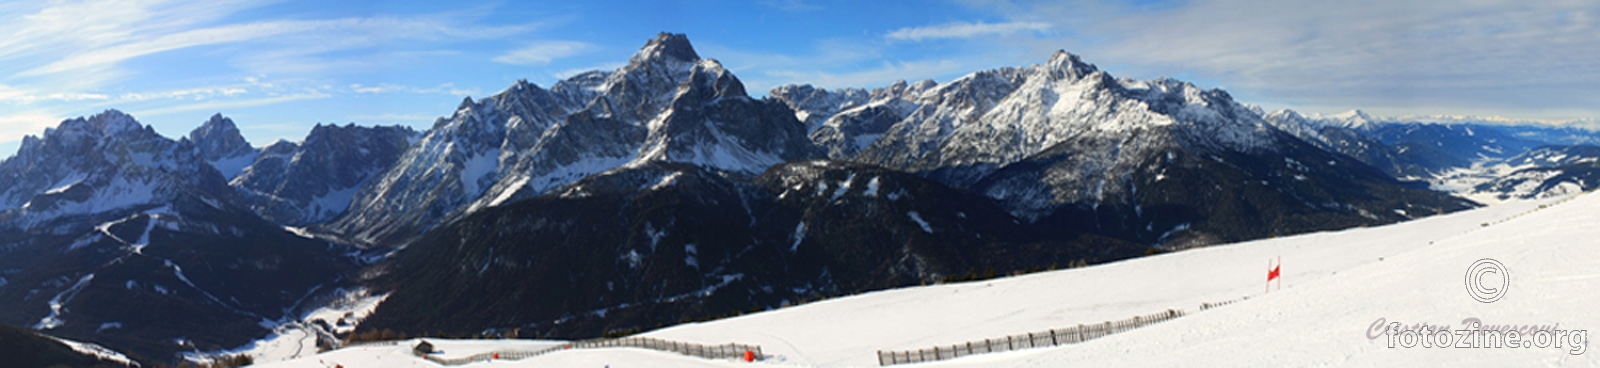 Tirolska Panorama